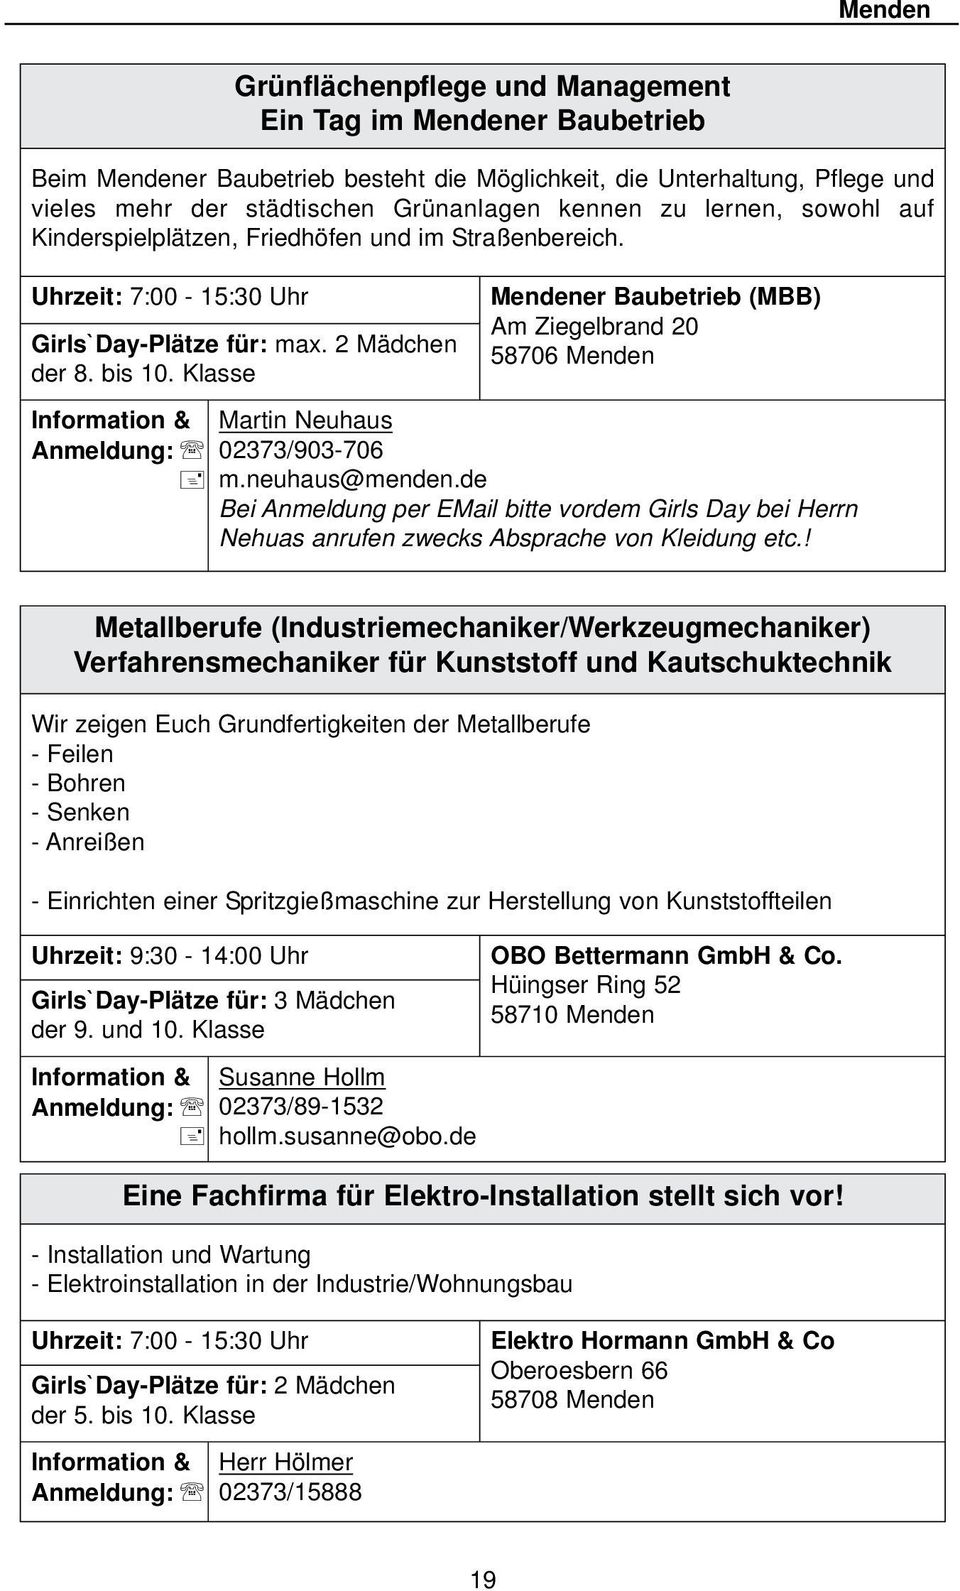 Klasse Mendener Baubetrieb (MBB) Am Ziegelbrand 20 58706 Menden Information & Martin Neuhaus Anmeldung: 02373/903-706 m.neuhaus@menden.